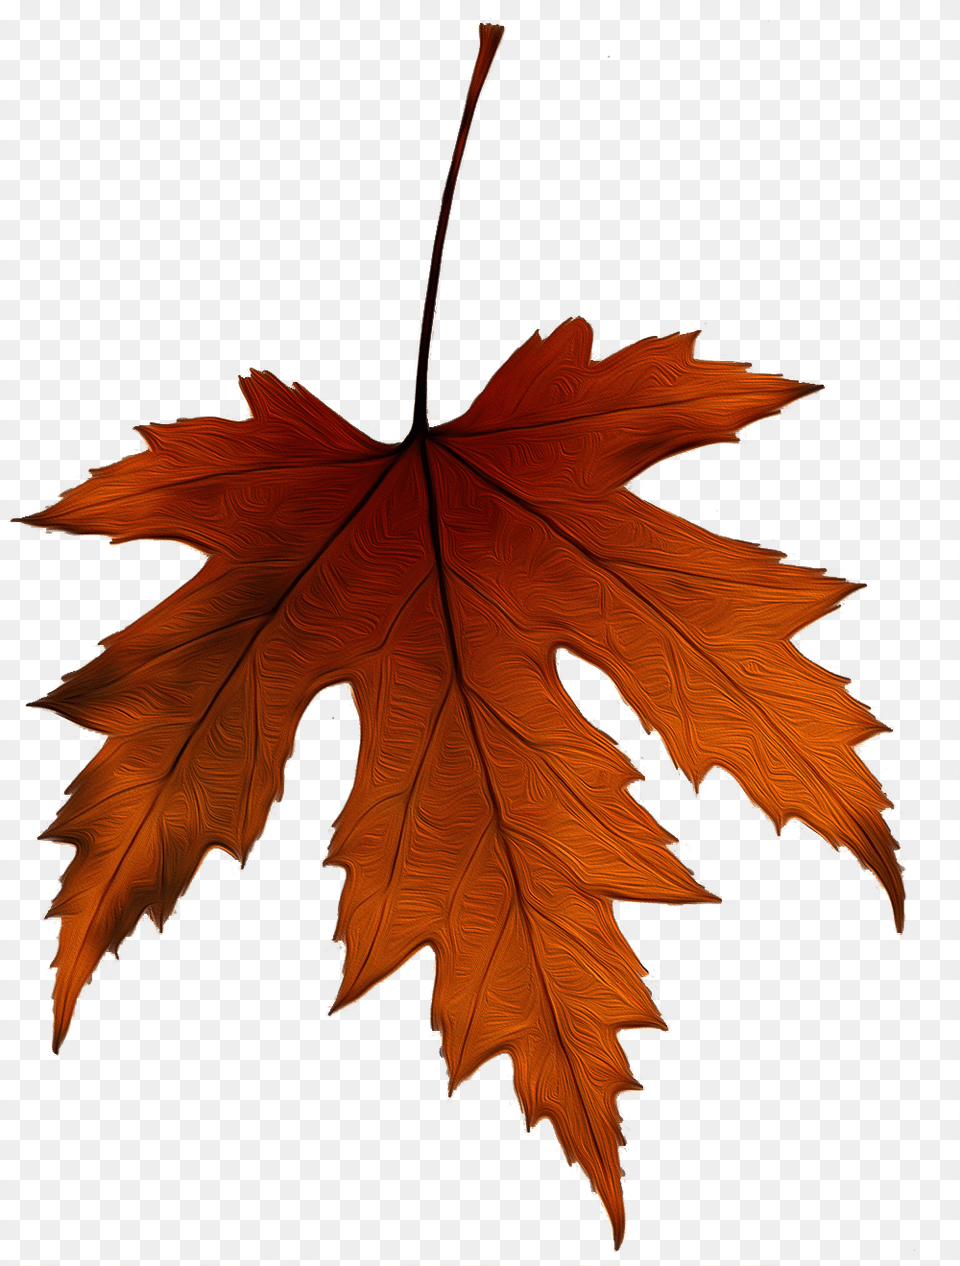 Hoja De Un Rbol Hojas De Arbol, Leaf, Plant, Tree, Maple Leaf Png Image